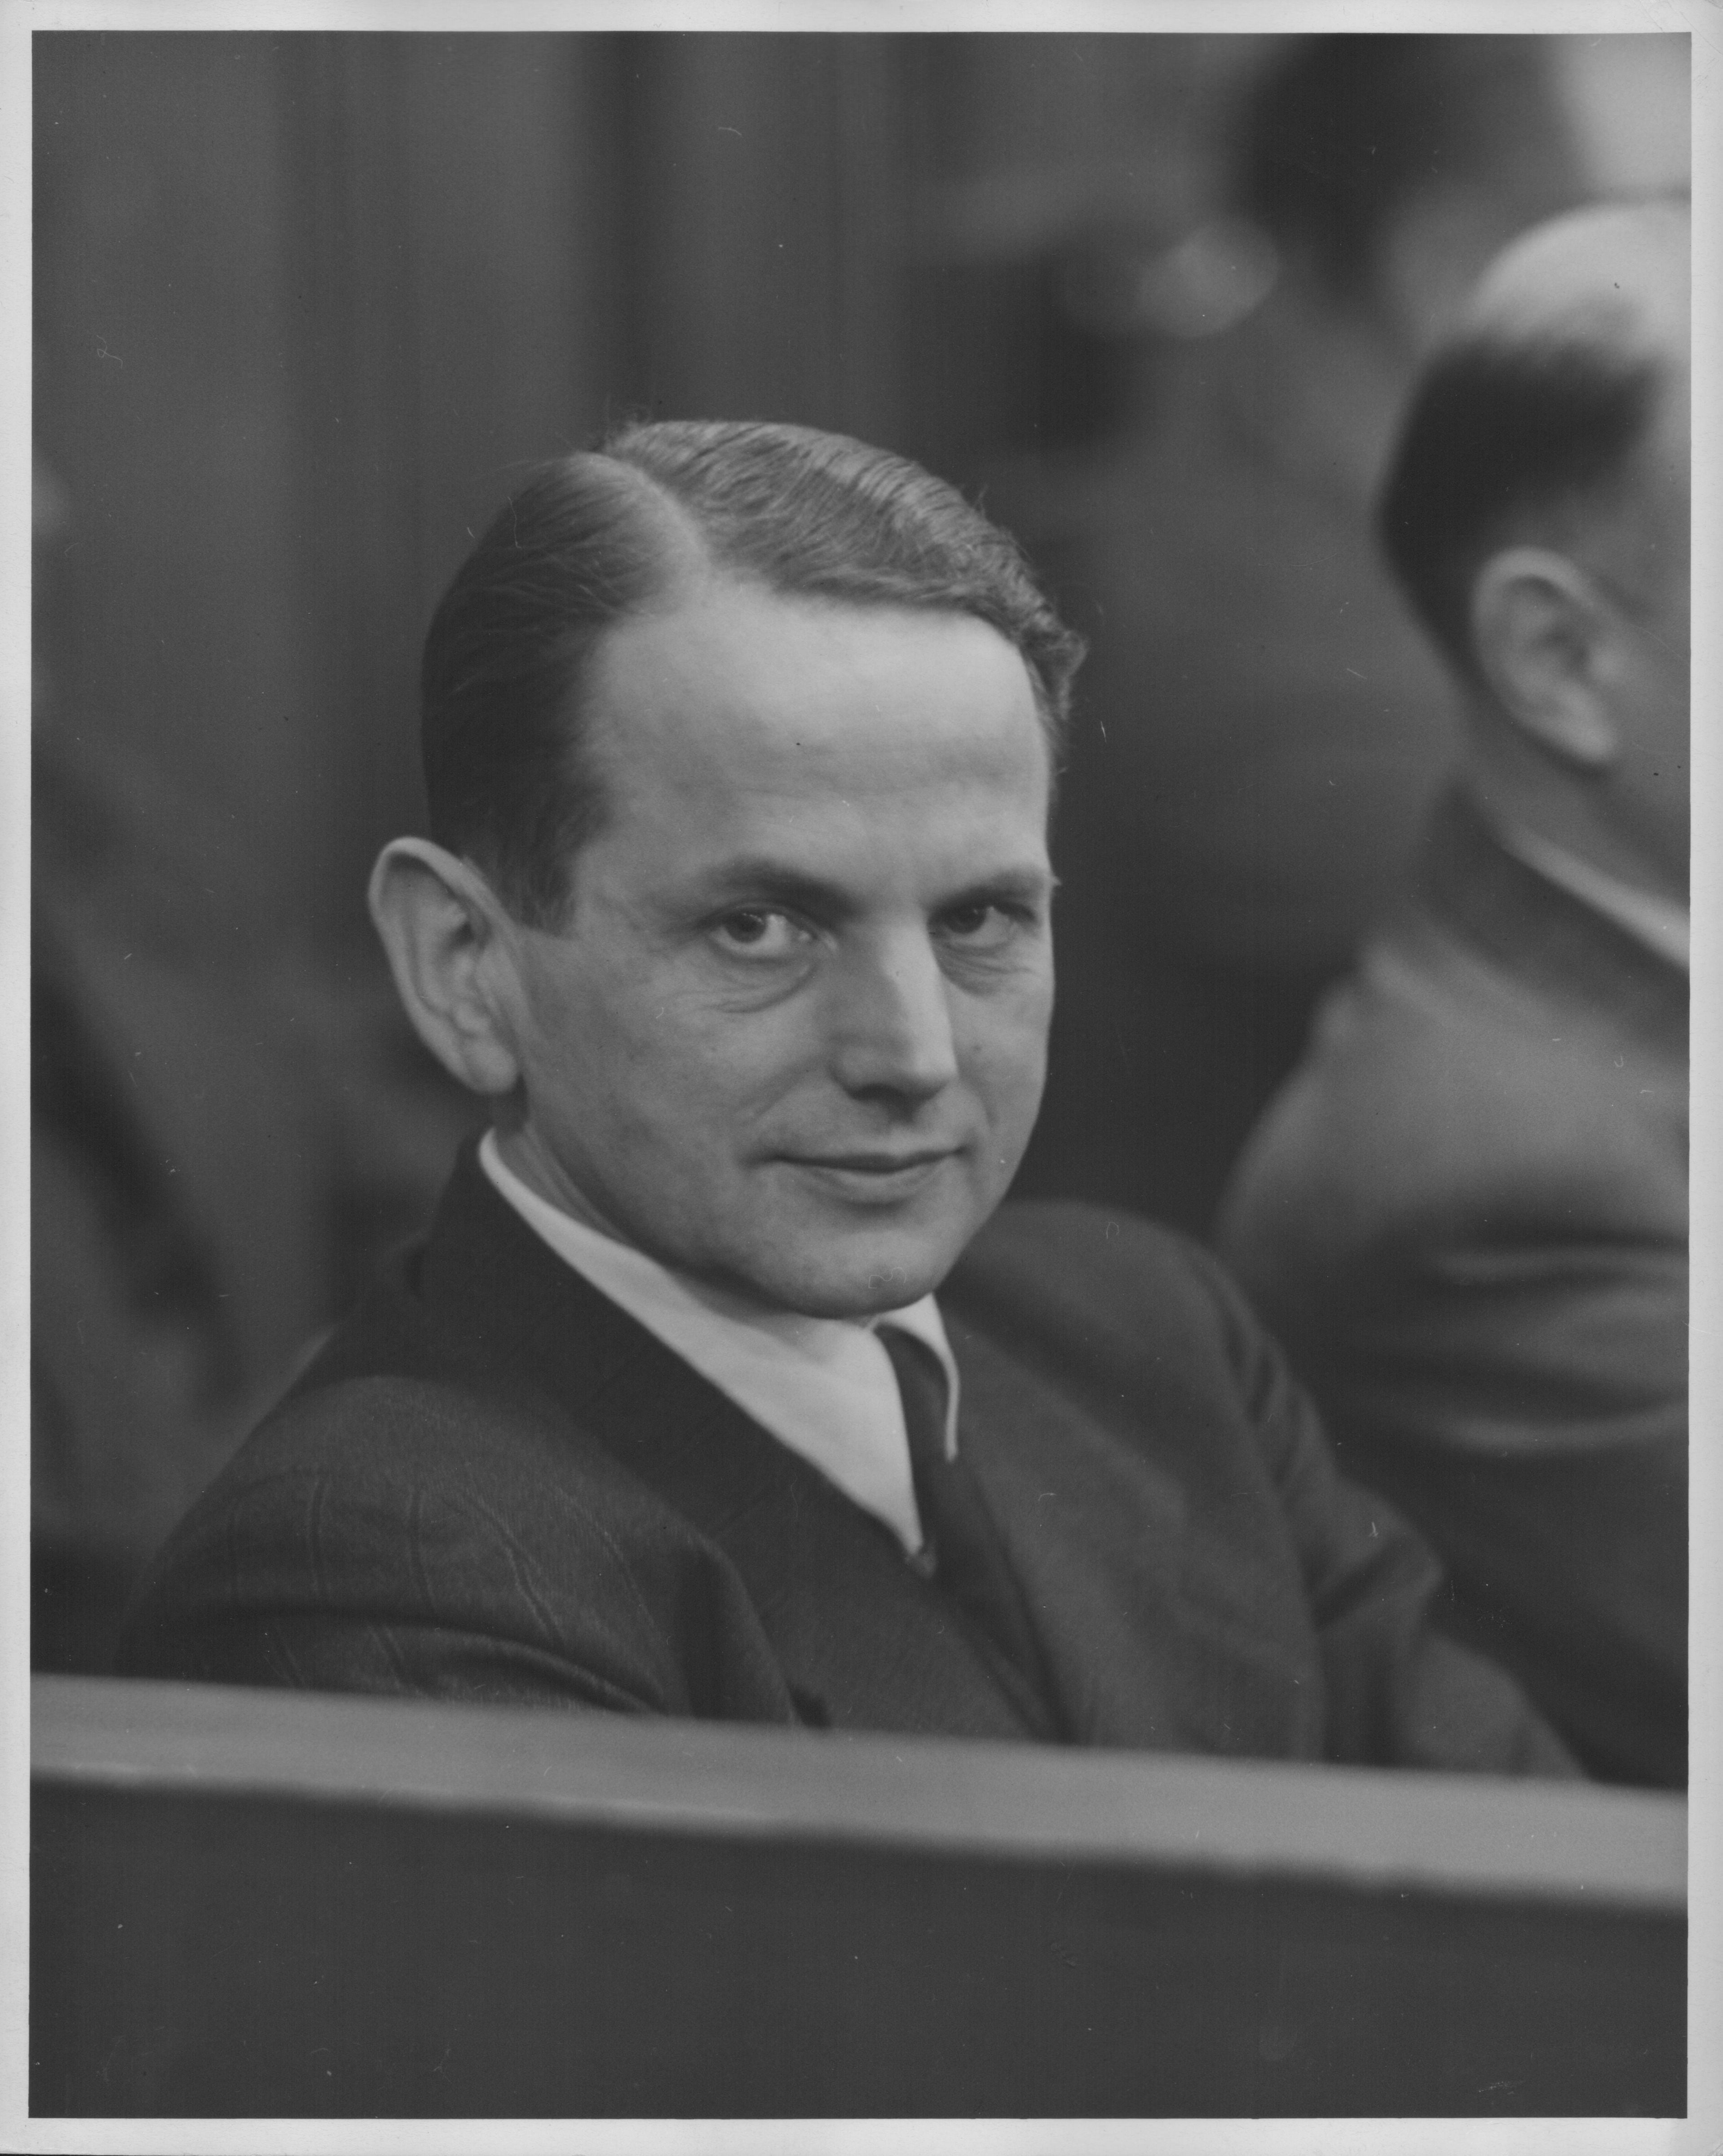 Otto Ohlendorf en el juicio en el que fue condenado a muerte. Nunca se arrepintió de sus crímenes (Photo by Keystone/Hulton Archive/Getty Images)